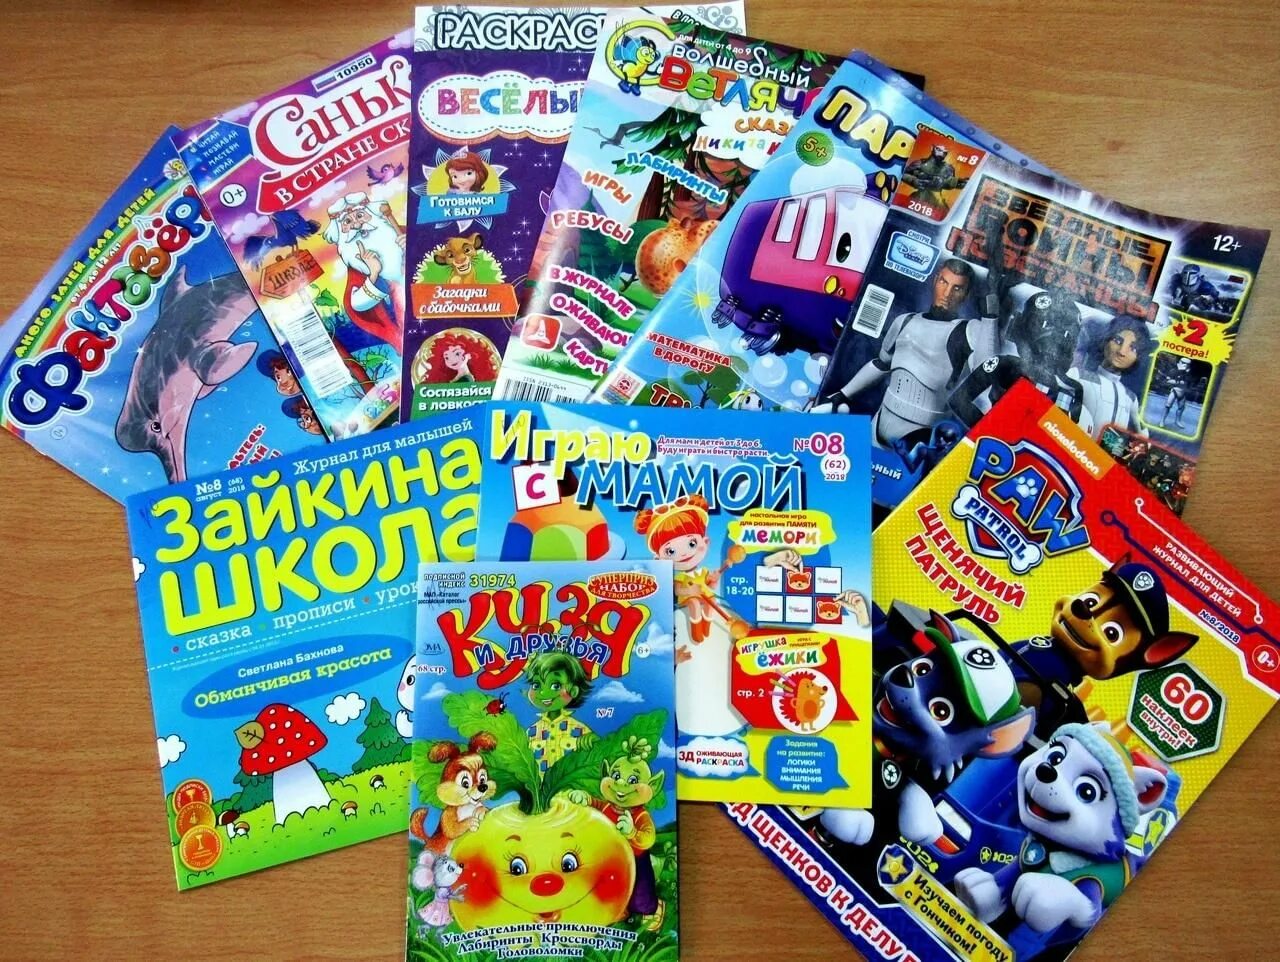 Детские журналы. Современные детские журналы. Детские журналы для детей. Периодические издания для детей.